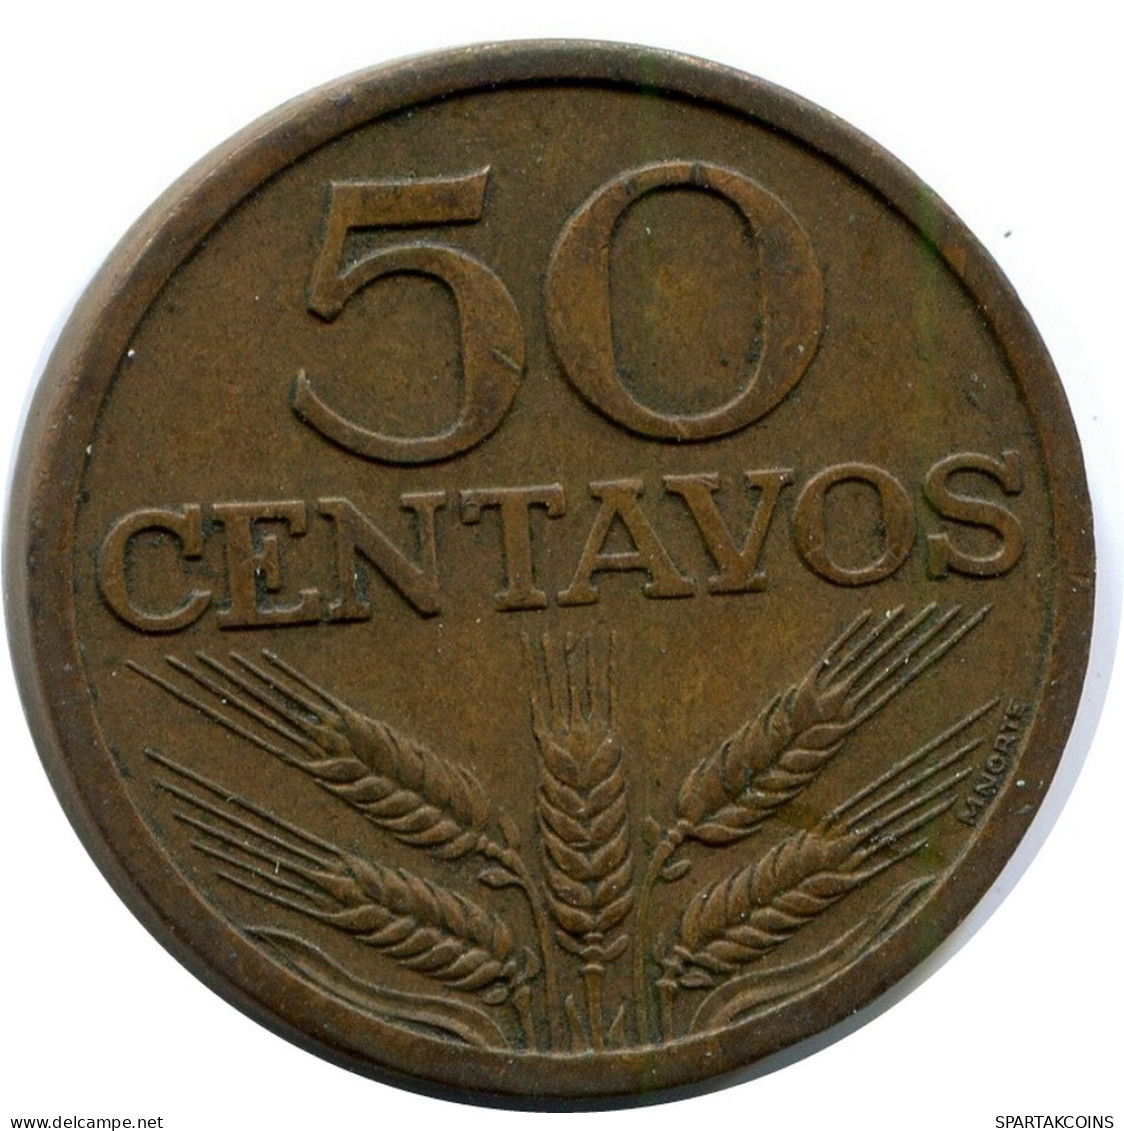 50 CENTAVOS 1970 PORTUGAL Moneda #BA183.E.A - Portugal